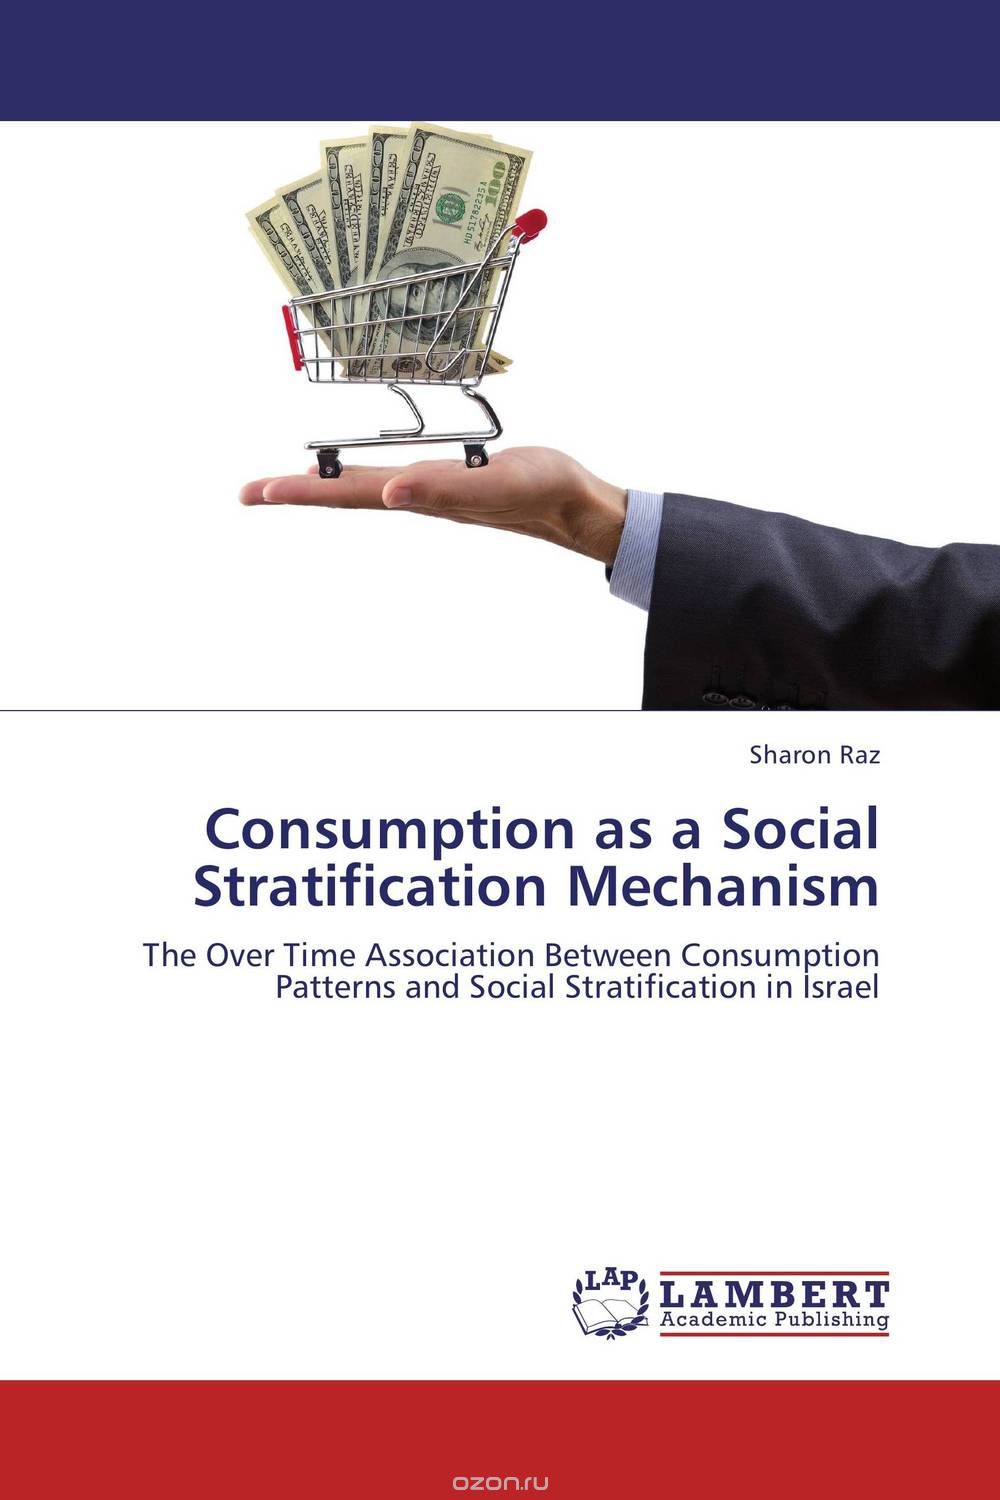 Скачать книгу "Consumption as a Social Stratification Mechanism"